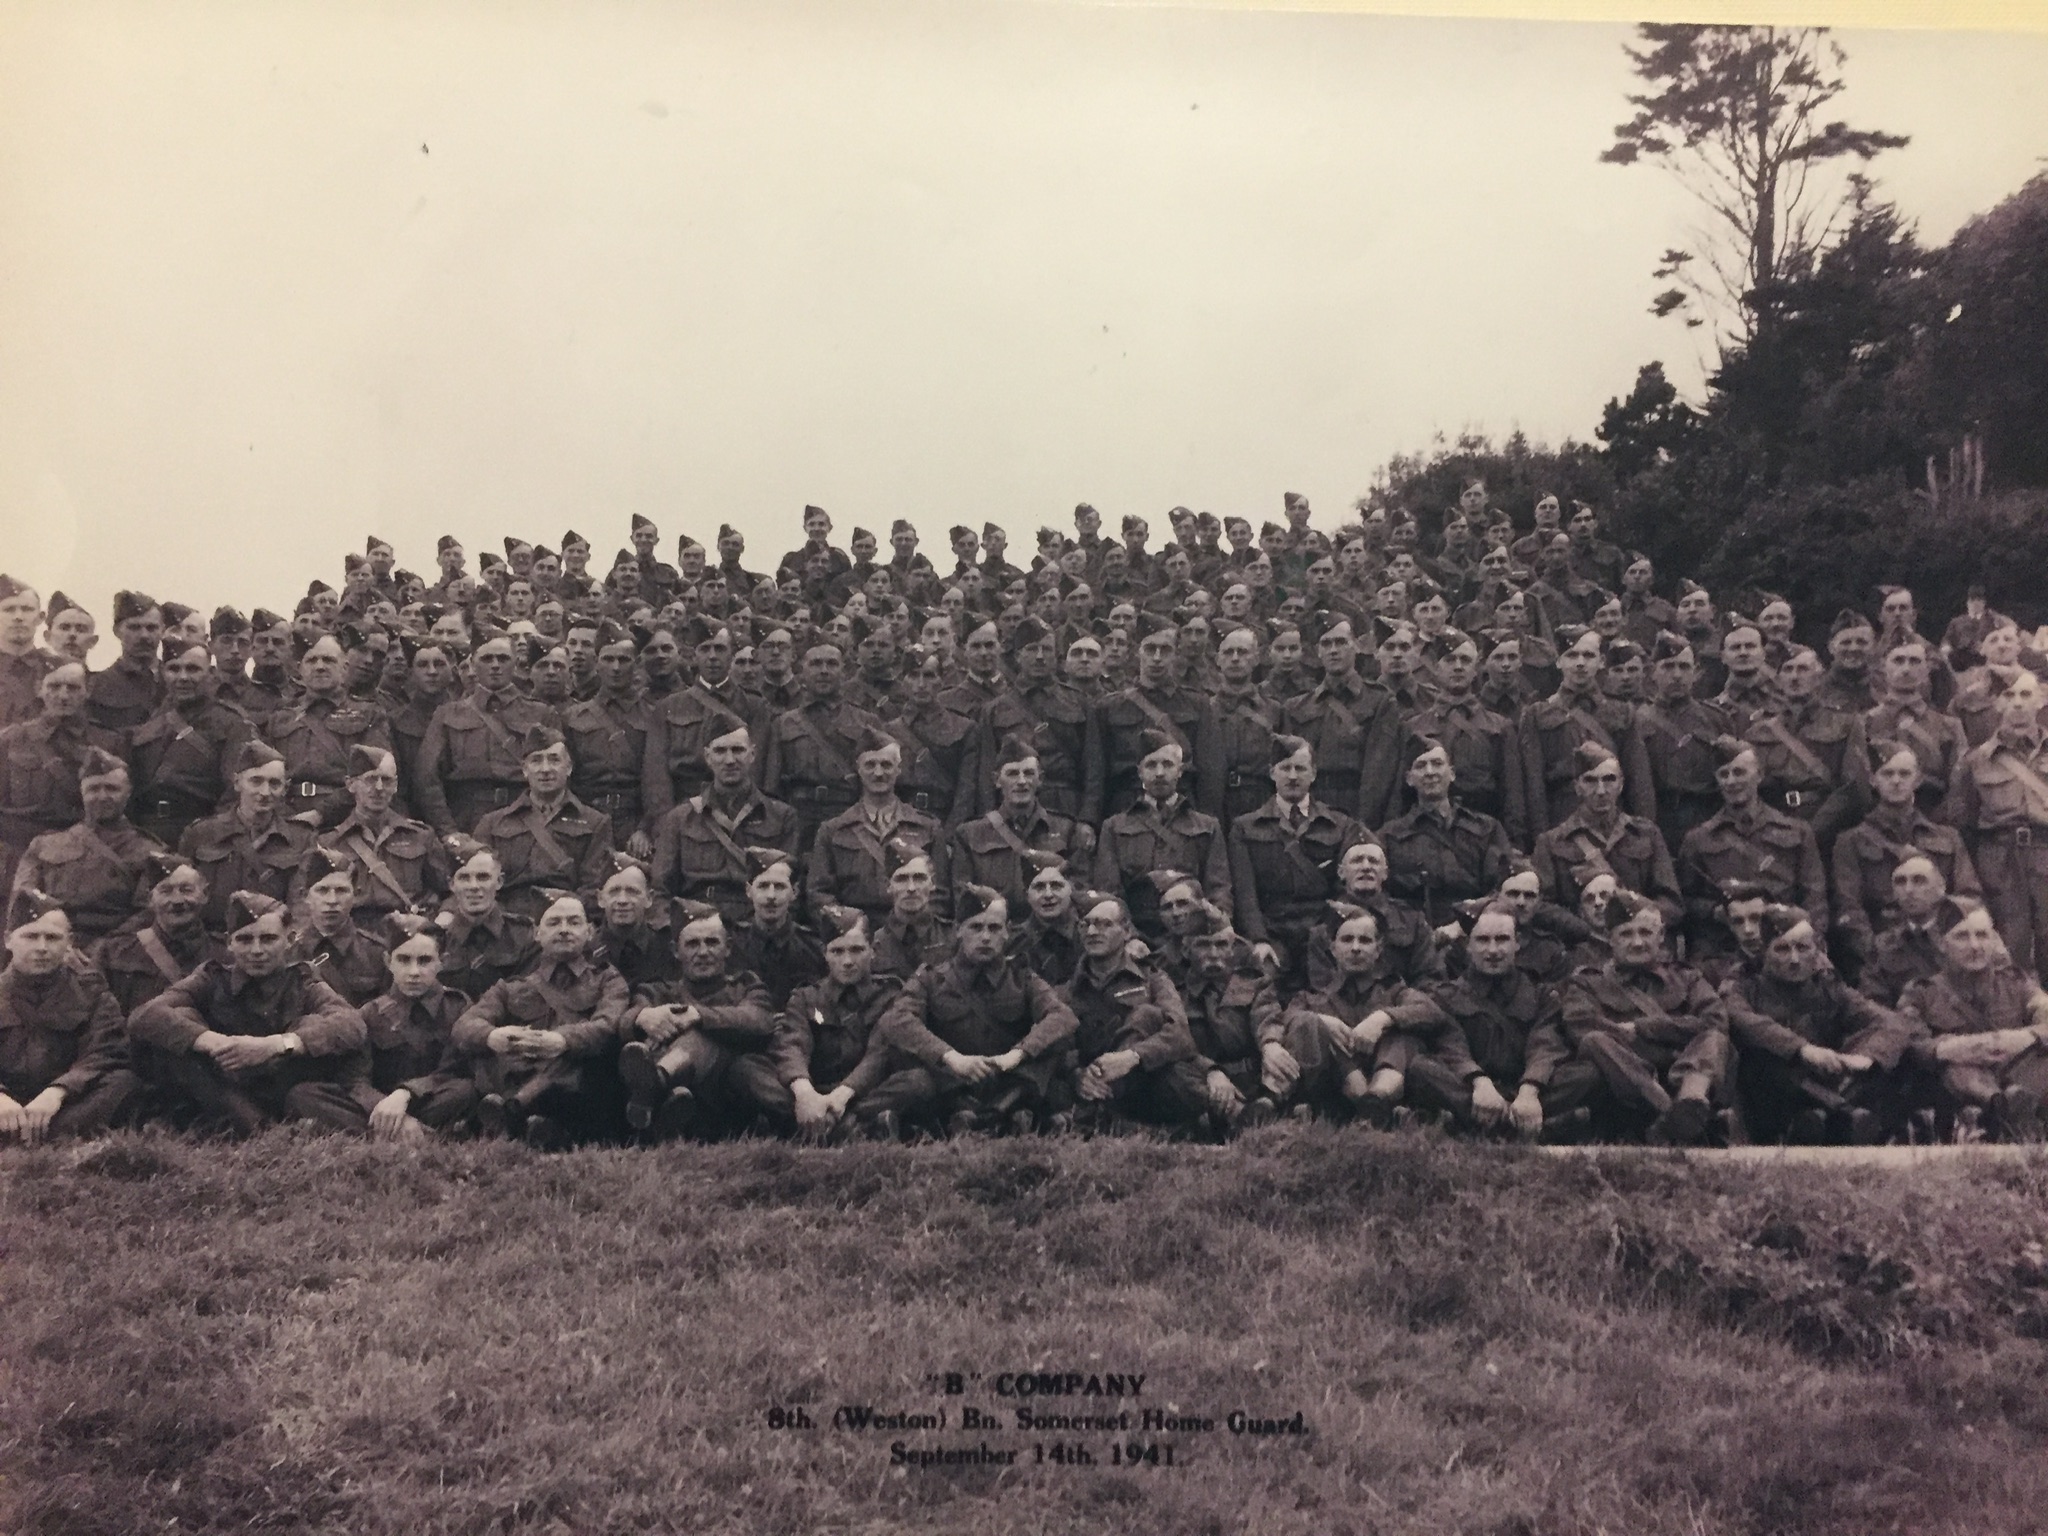 ‘B’ Company 8th Weston Bn. Home Guard 1941